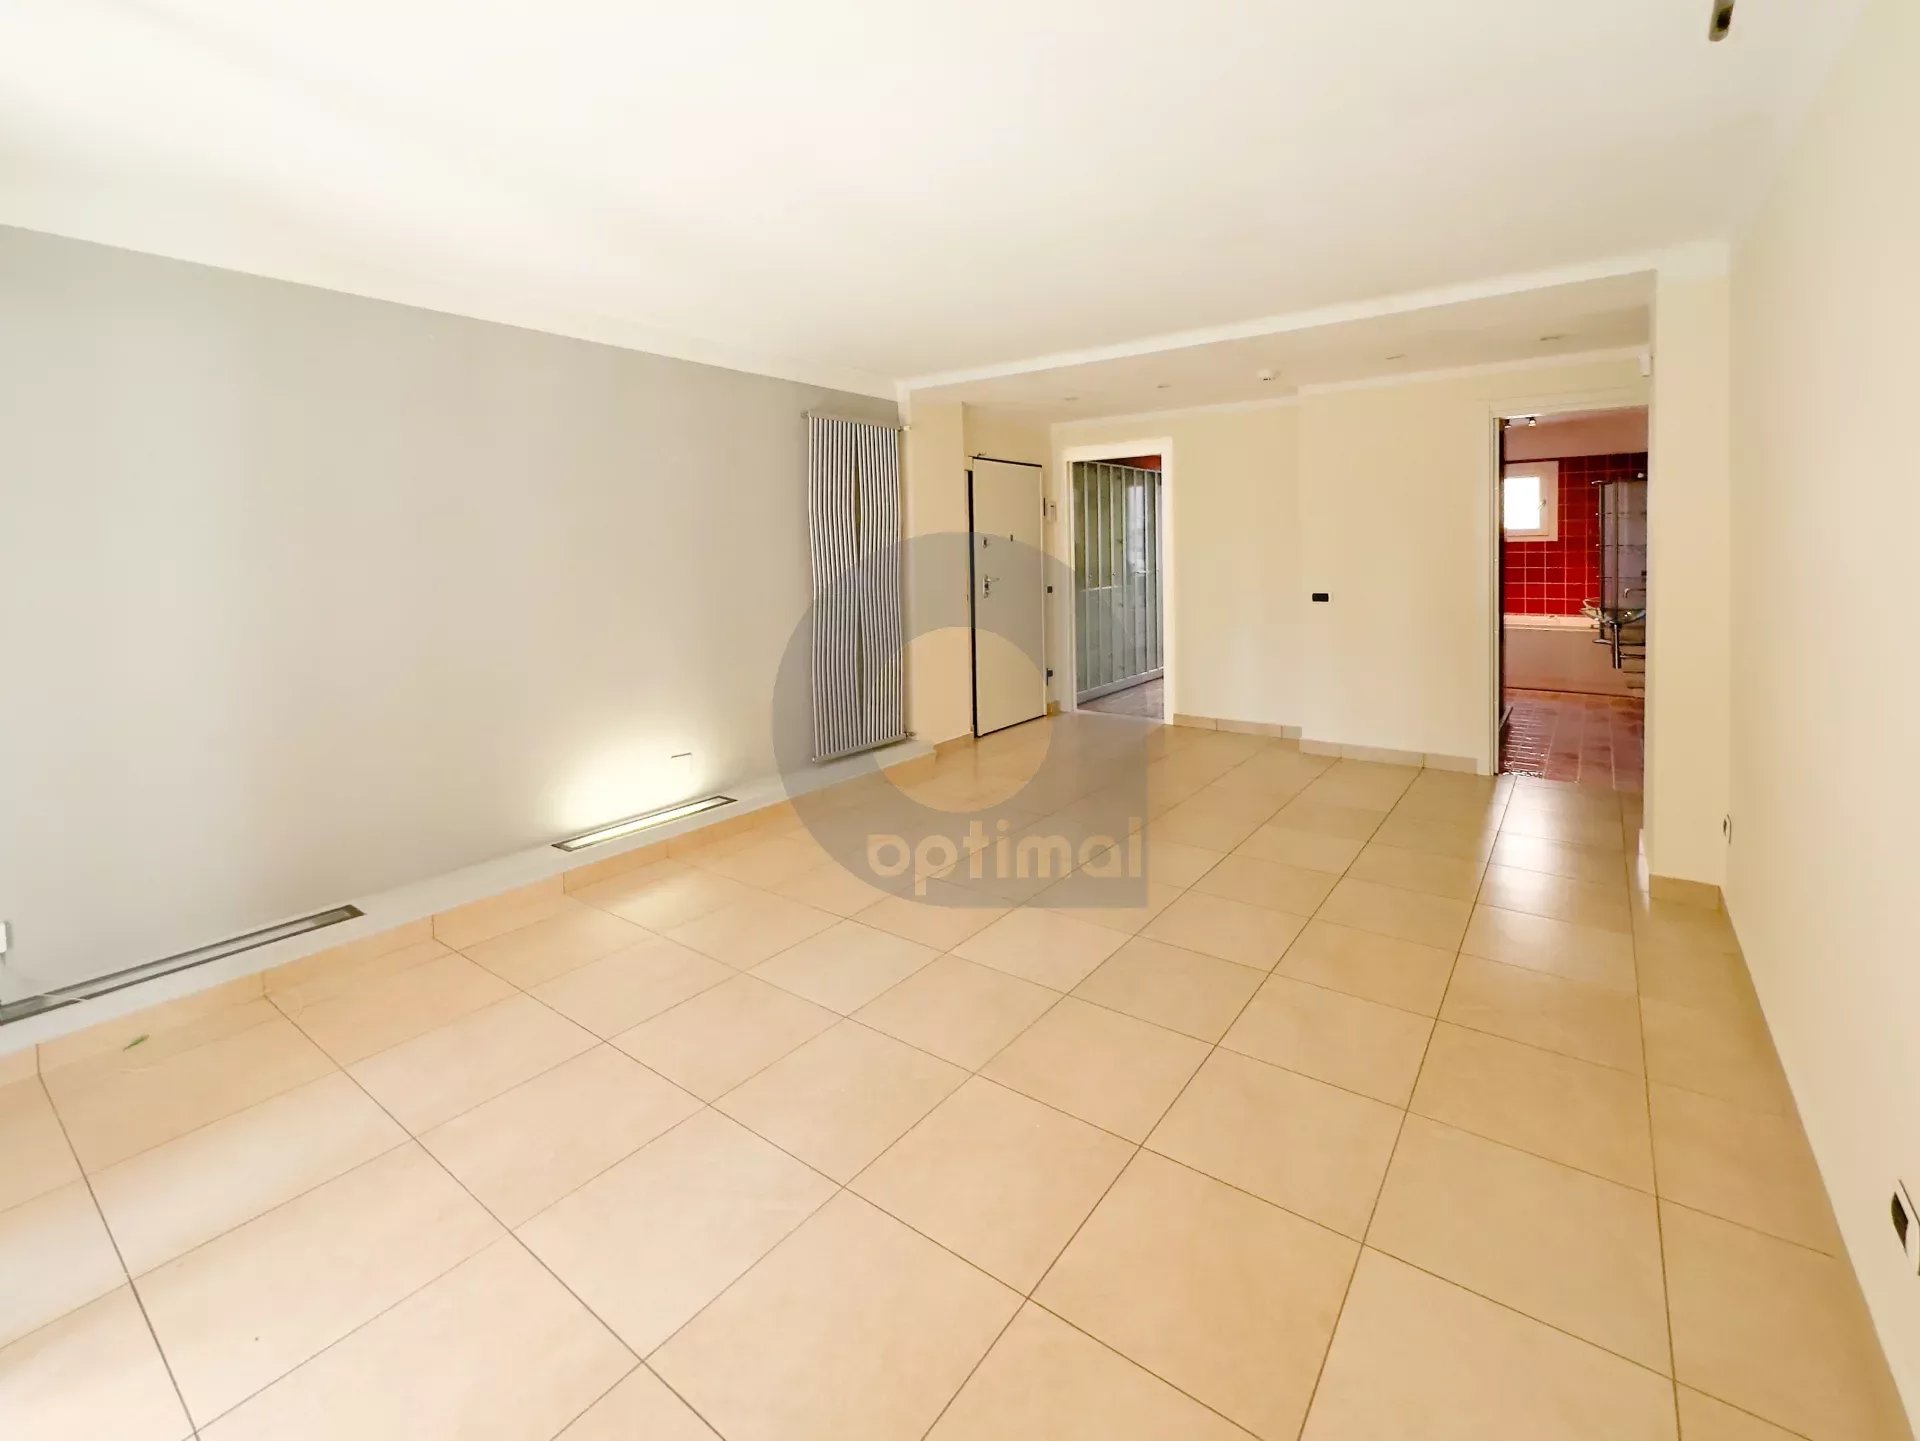 3-room apartment with large terrace in Roquebrune-Cap-Martin!